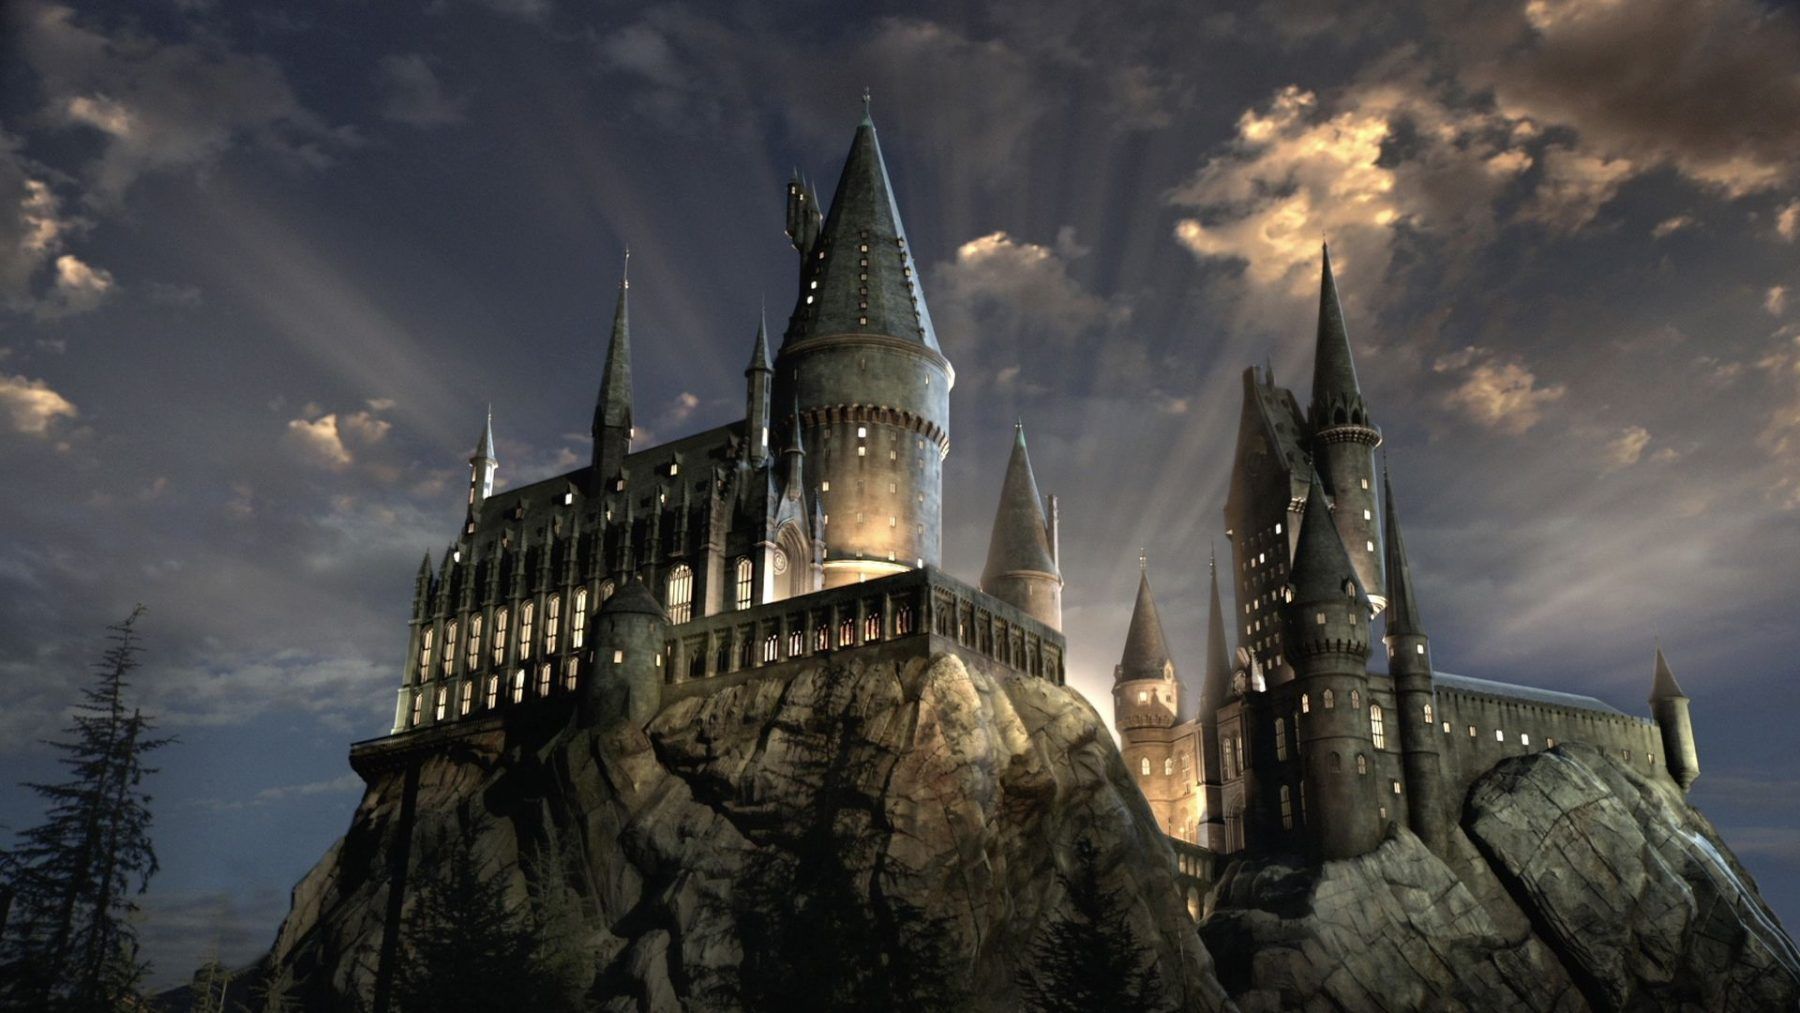 hogwarts legacy amazon